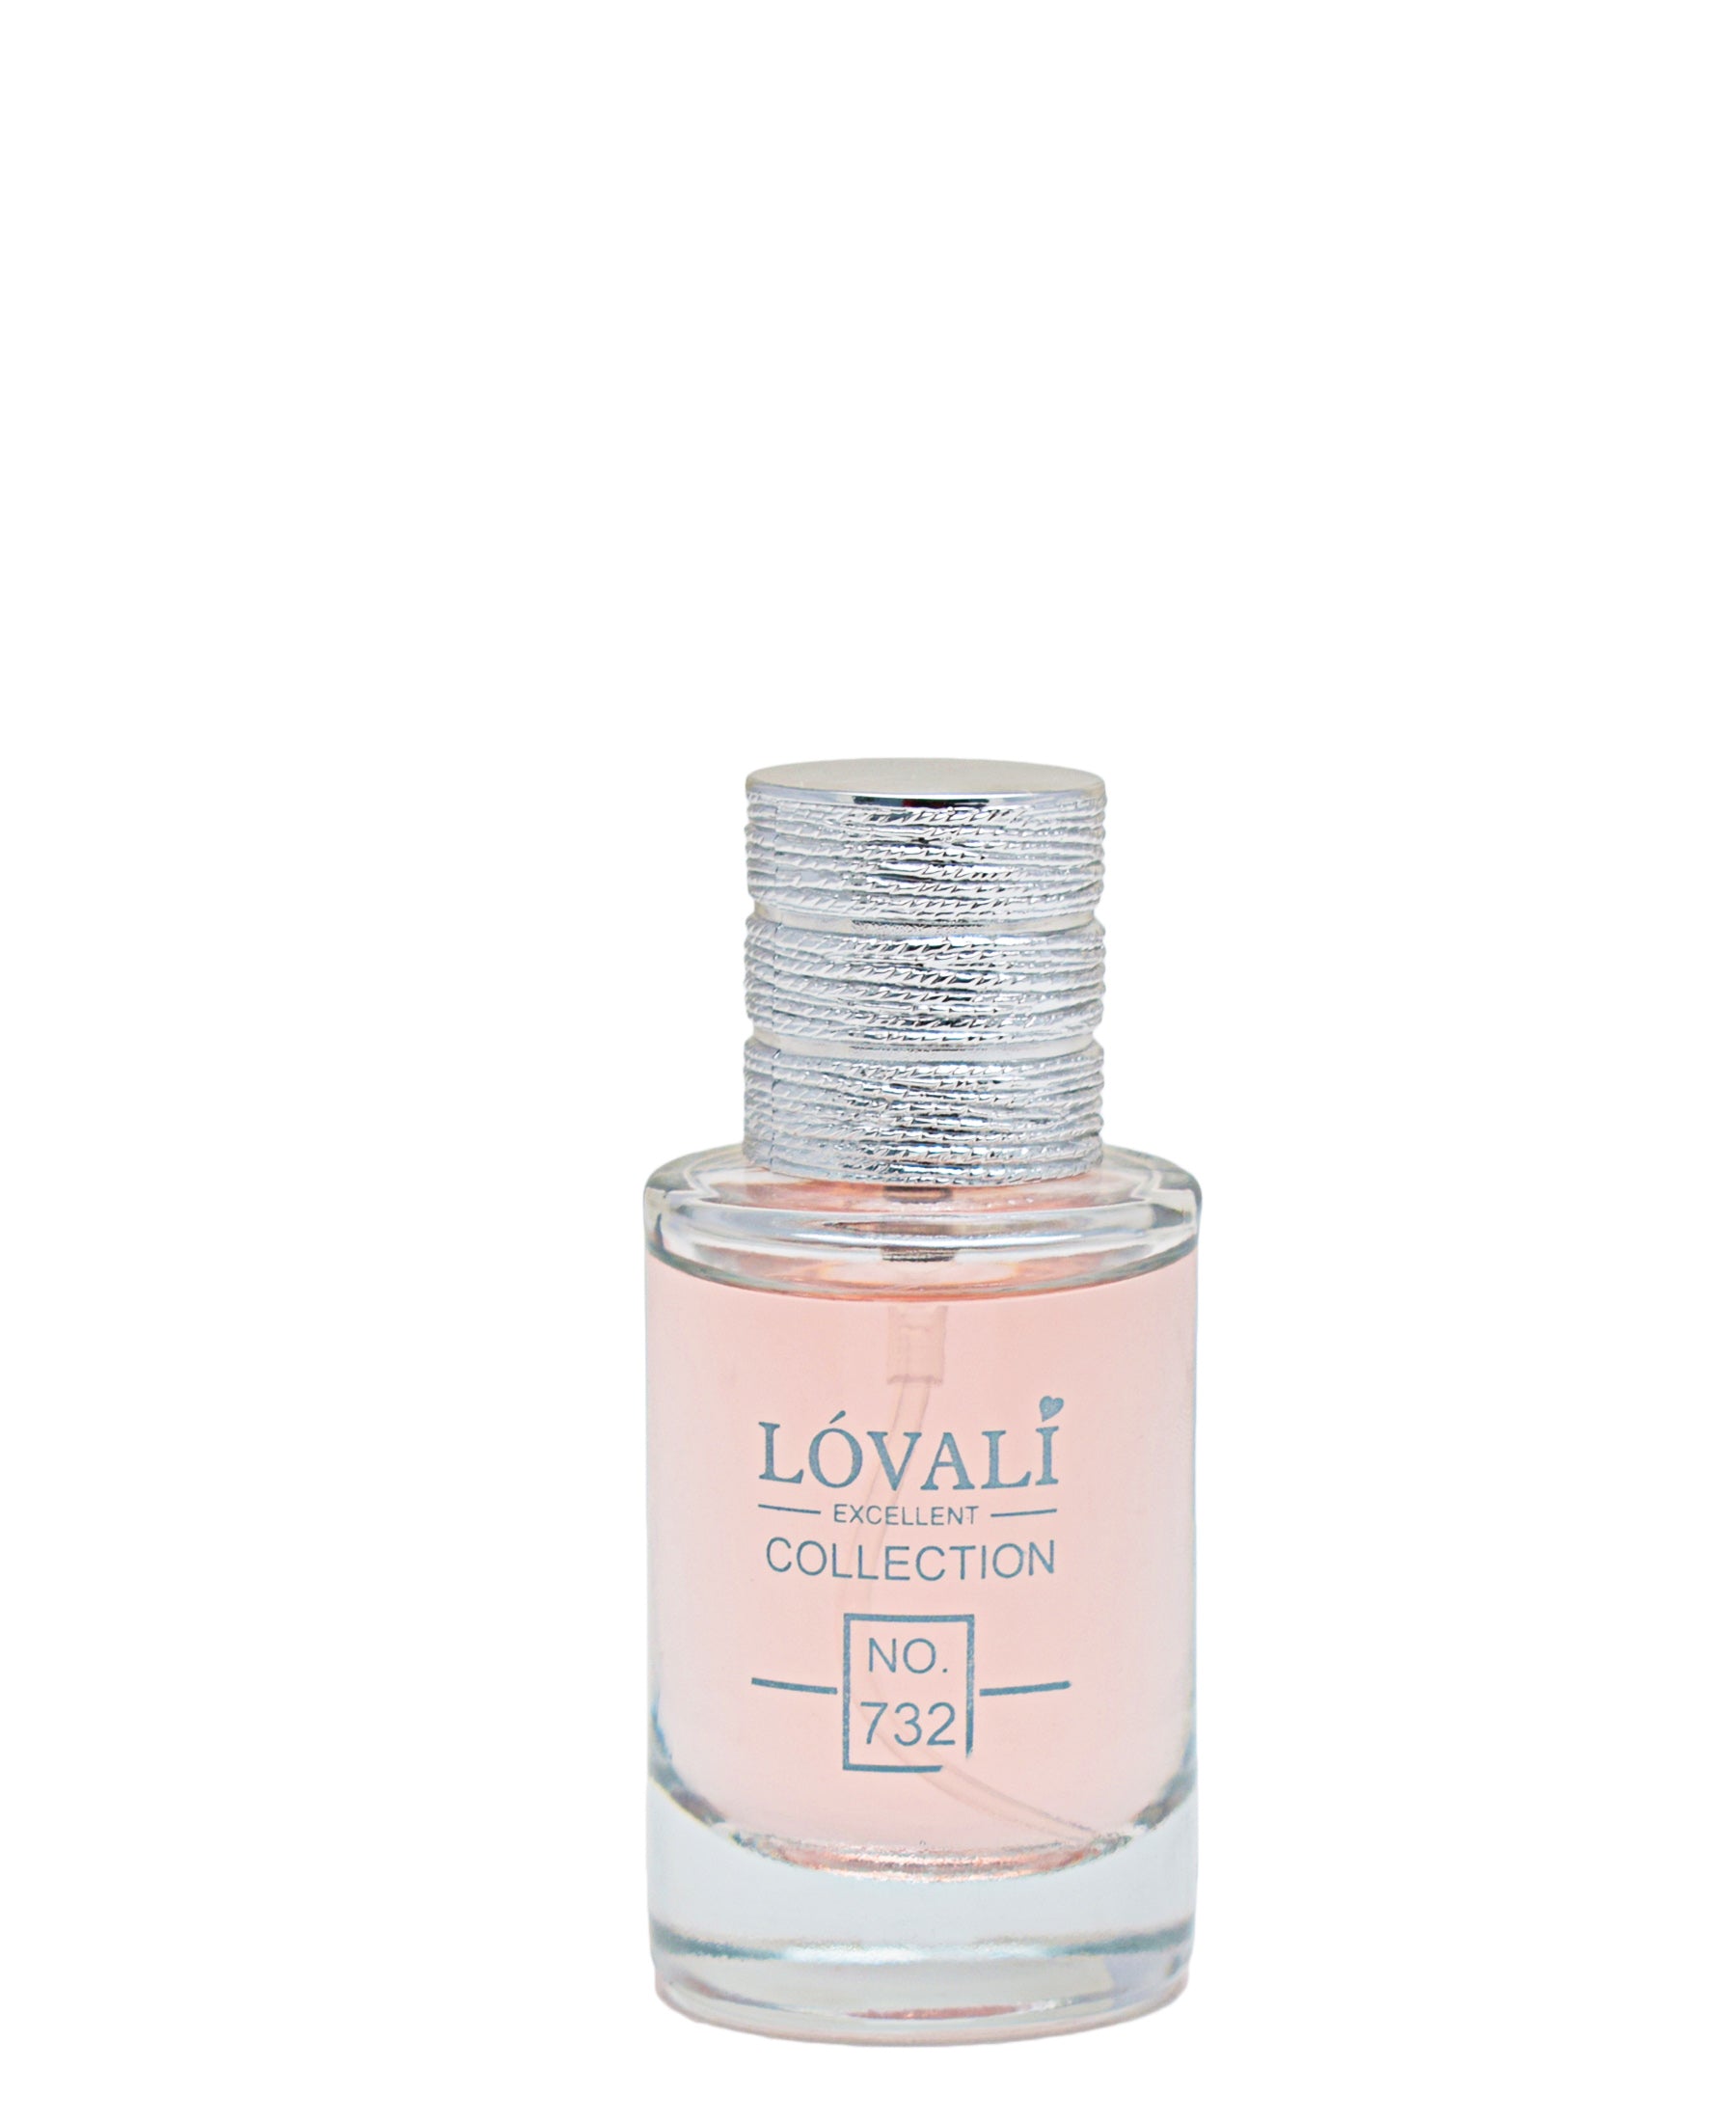 Lovali Perfume - Cream